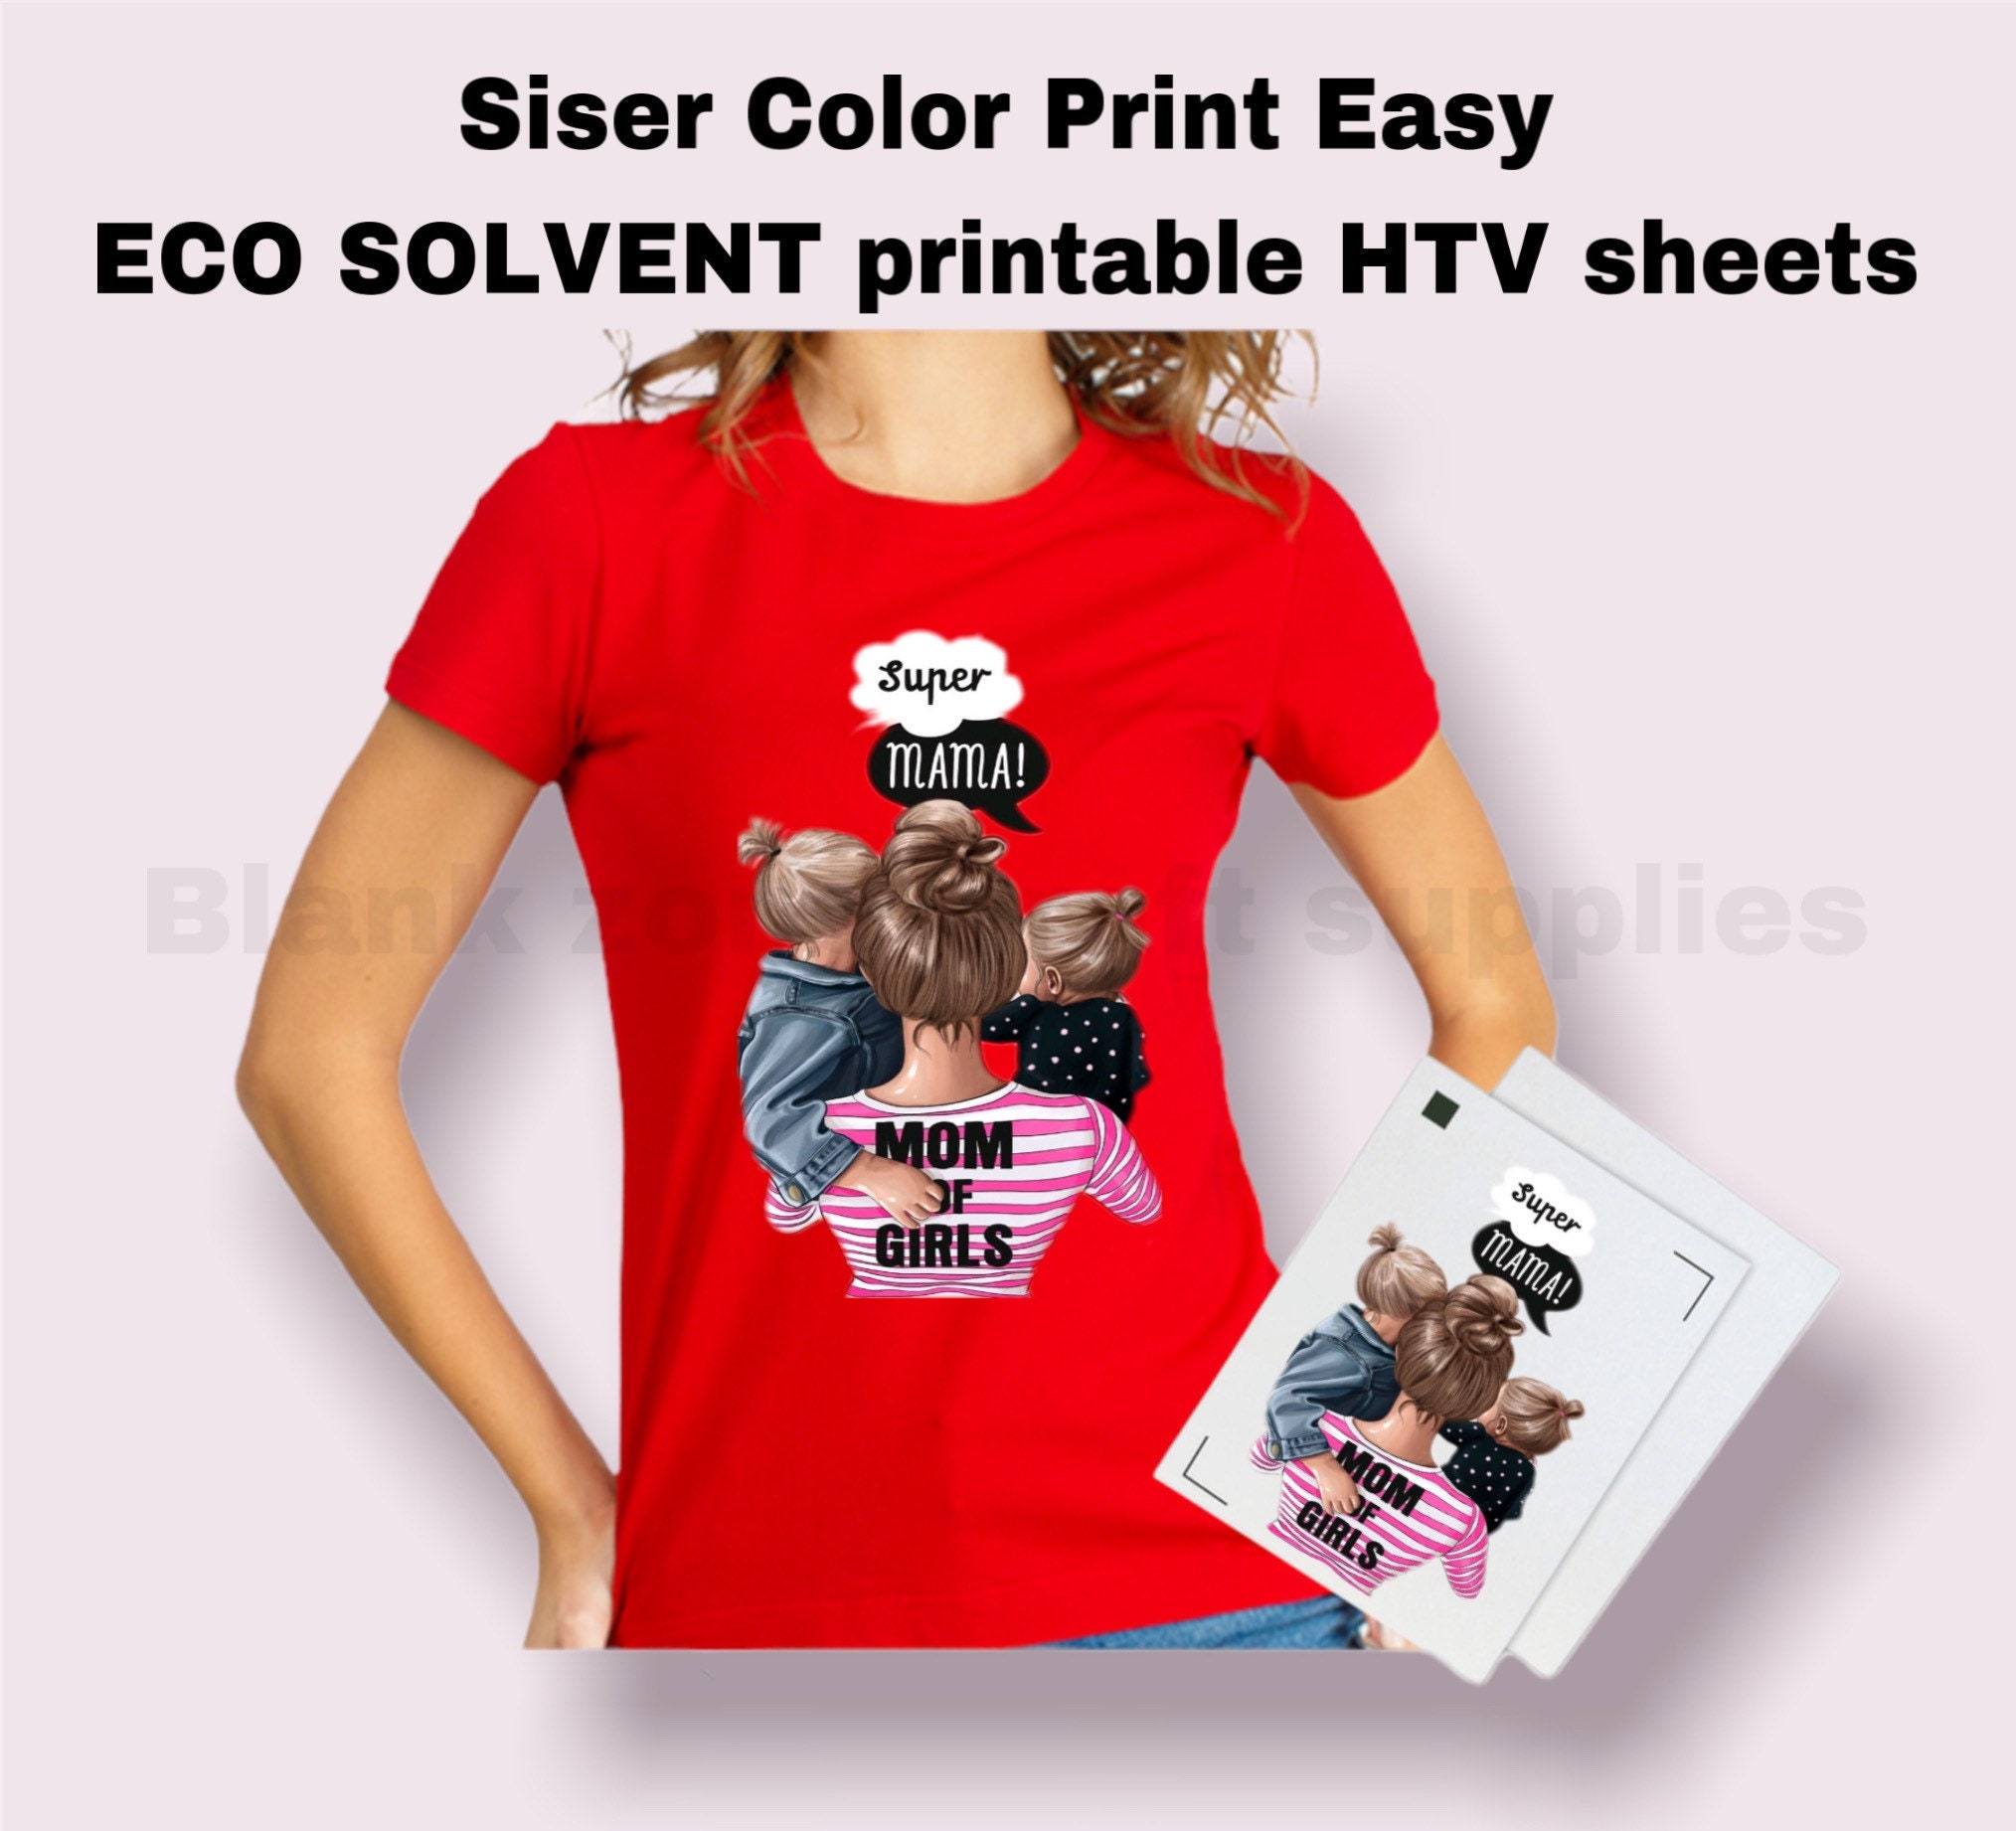 Siser Easysubli 8.4 X 11 Sheets / Printable Vinyl 